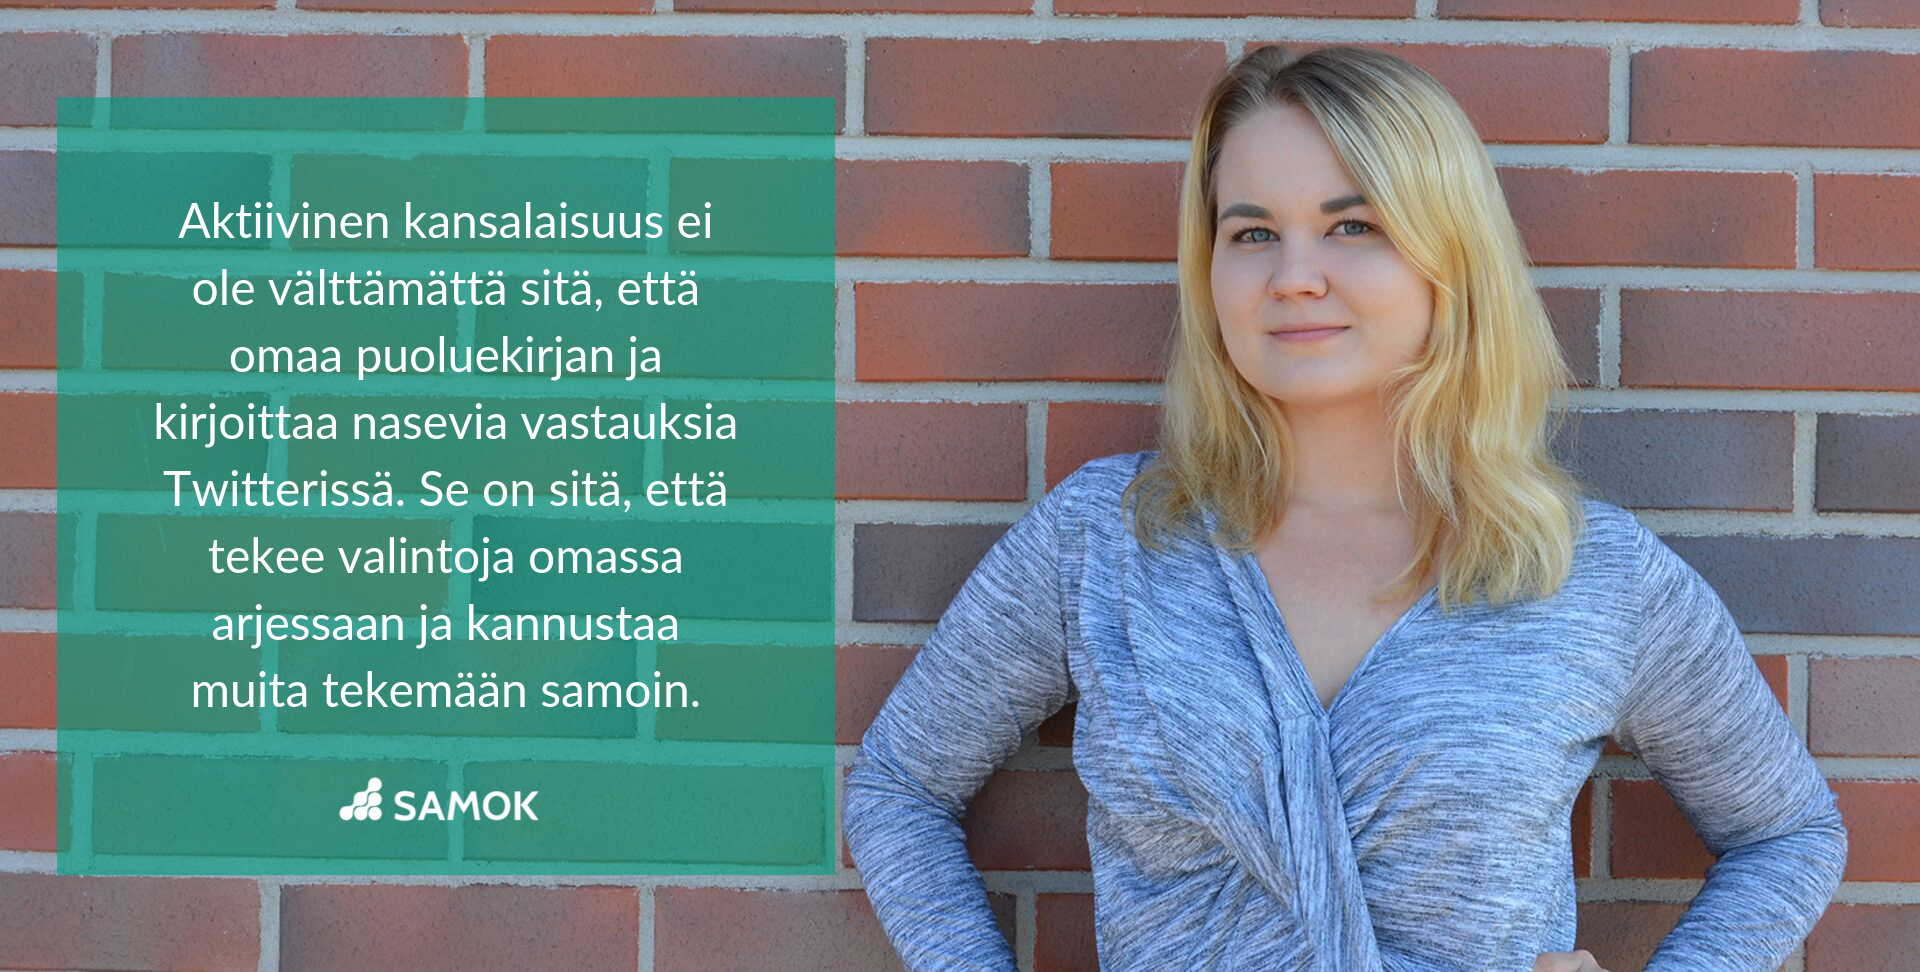 Ehdokasblogi Anna Laurila: Nuoriso ei ole pilalla, he vaan haluavat muutosta.